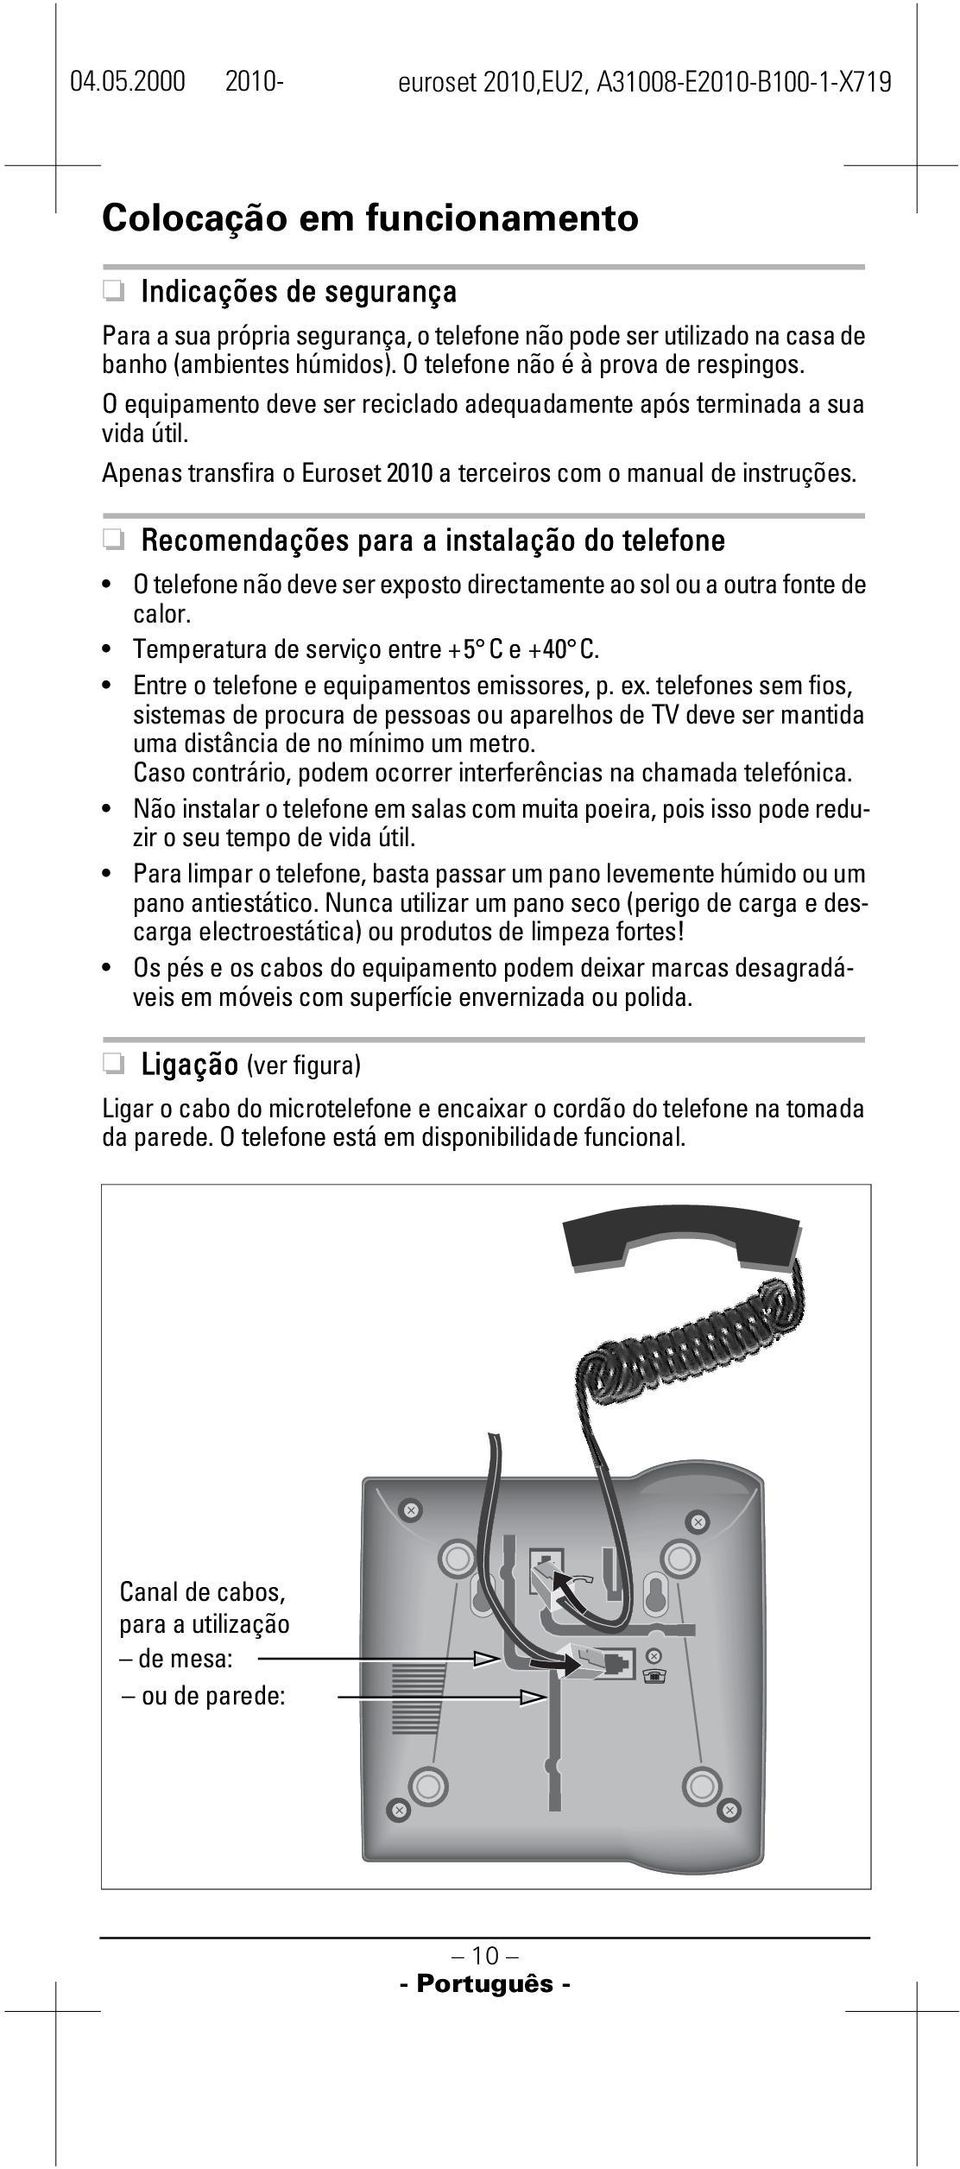 Recomendações para a instalação do telefone O telefone não deve ser exposto directamente ao sol ou a outra fonte de calor. Temperatura de serviço entre +5 C e +40 C.